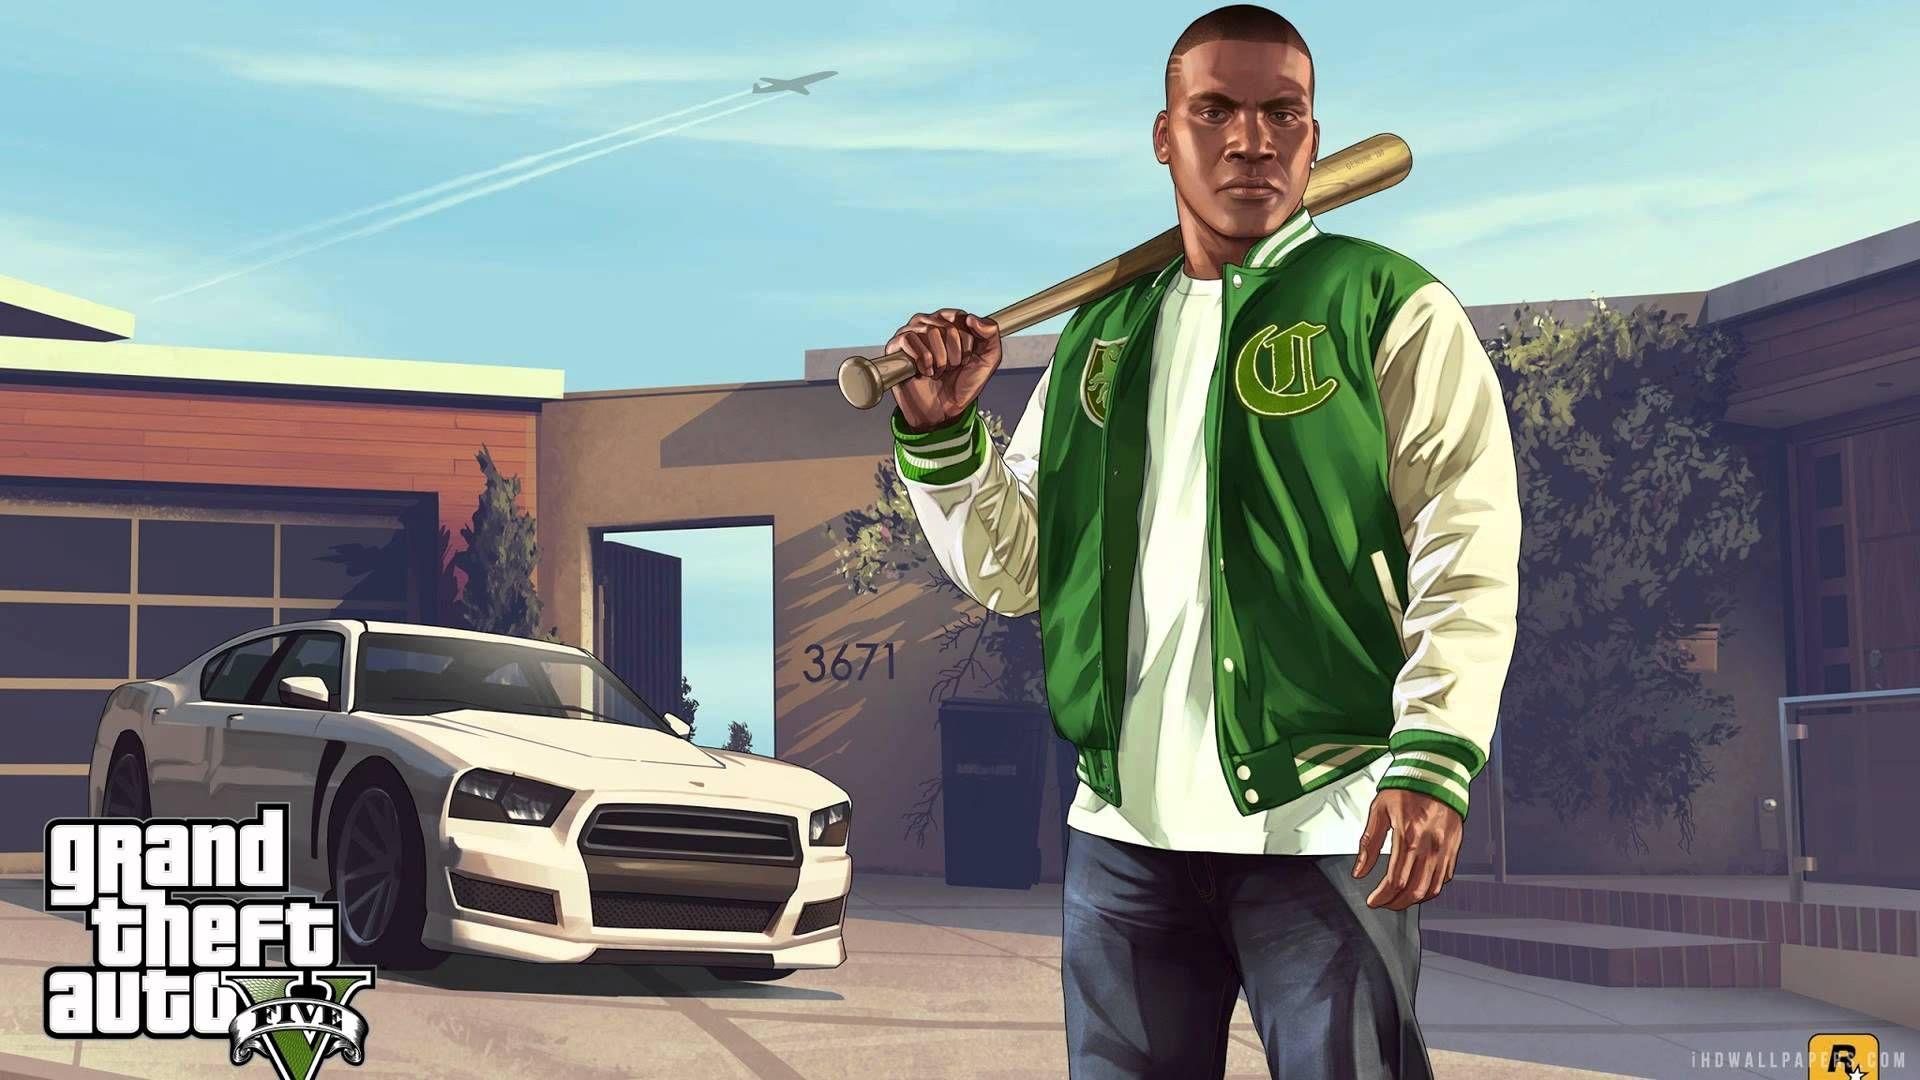 Grand Theft Auto V Wallpaper Gta 5 Wallpaper